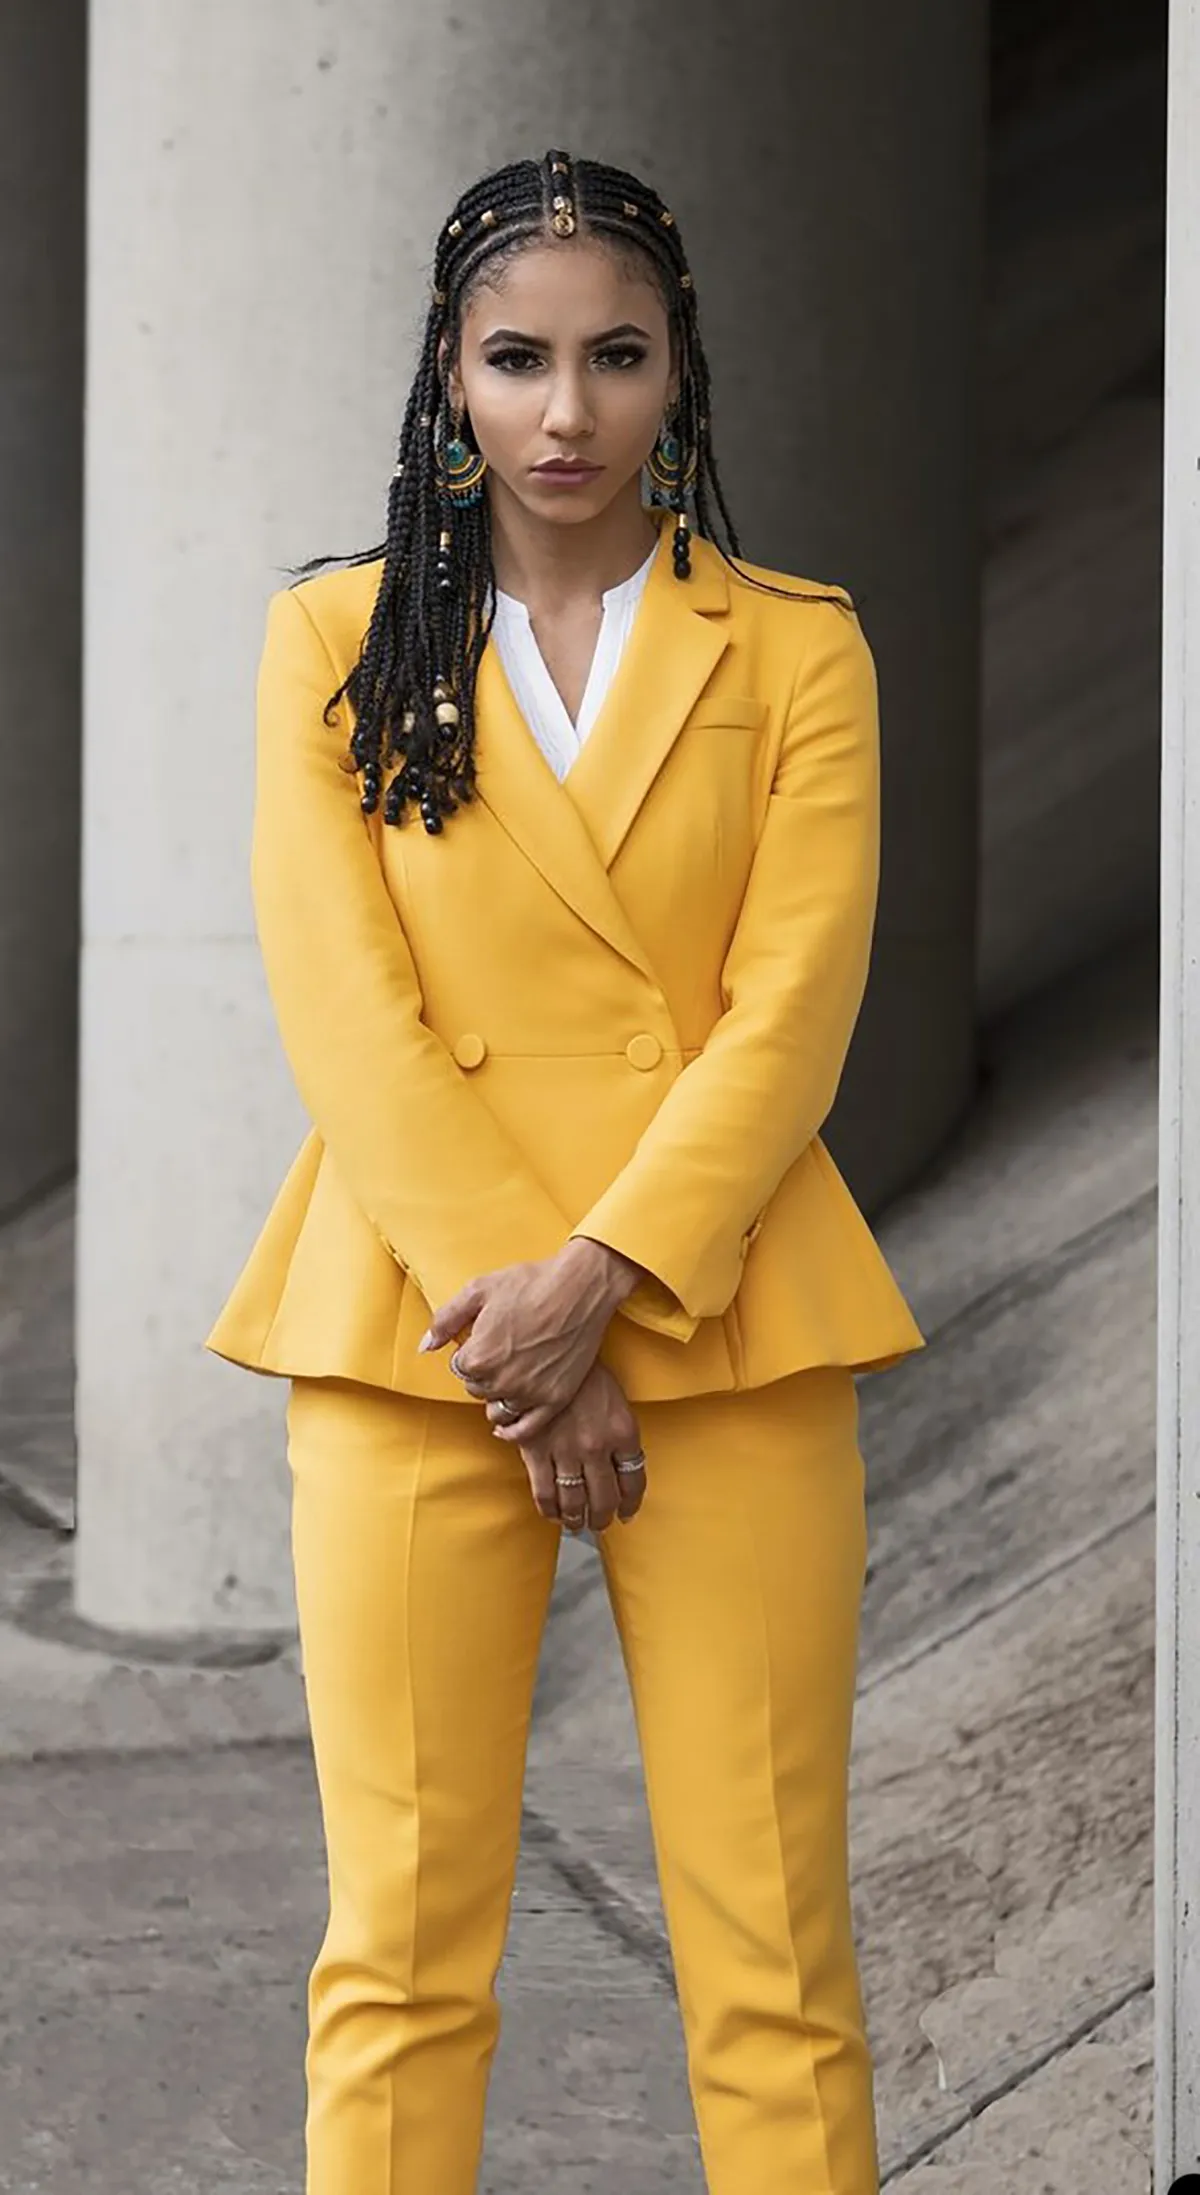 Buy Park Avenue Super Slim Fit Medium Yellow Suit for Men at Amazon.in